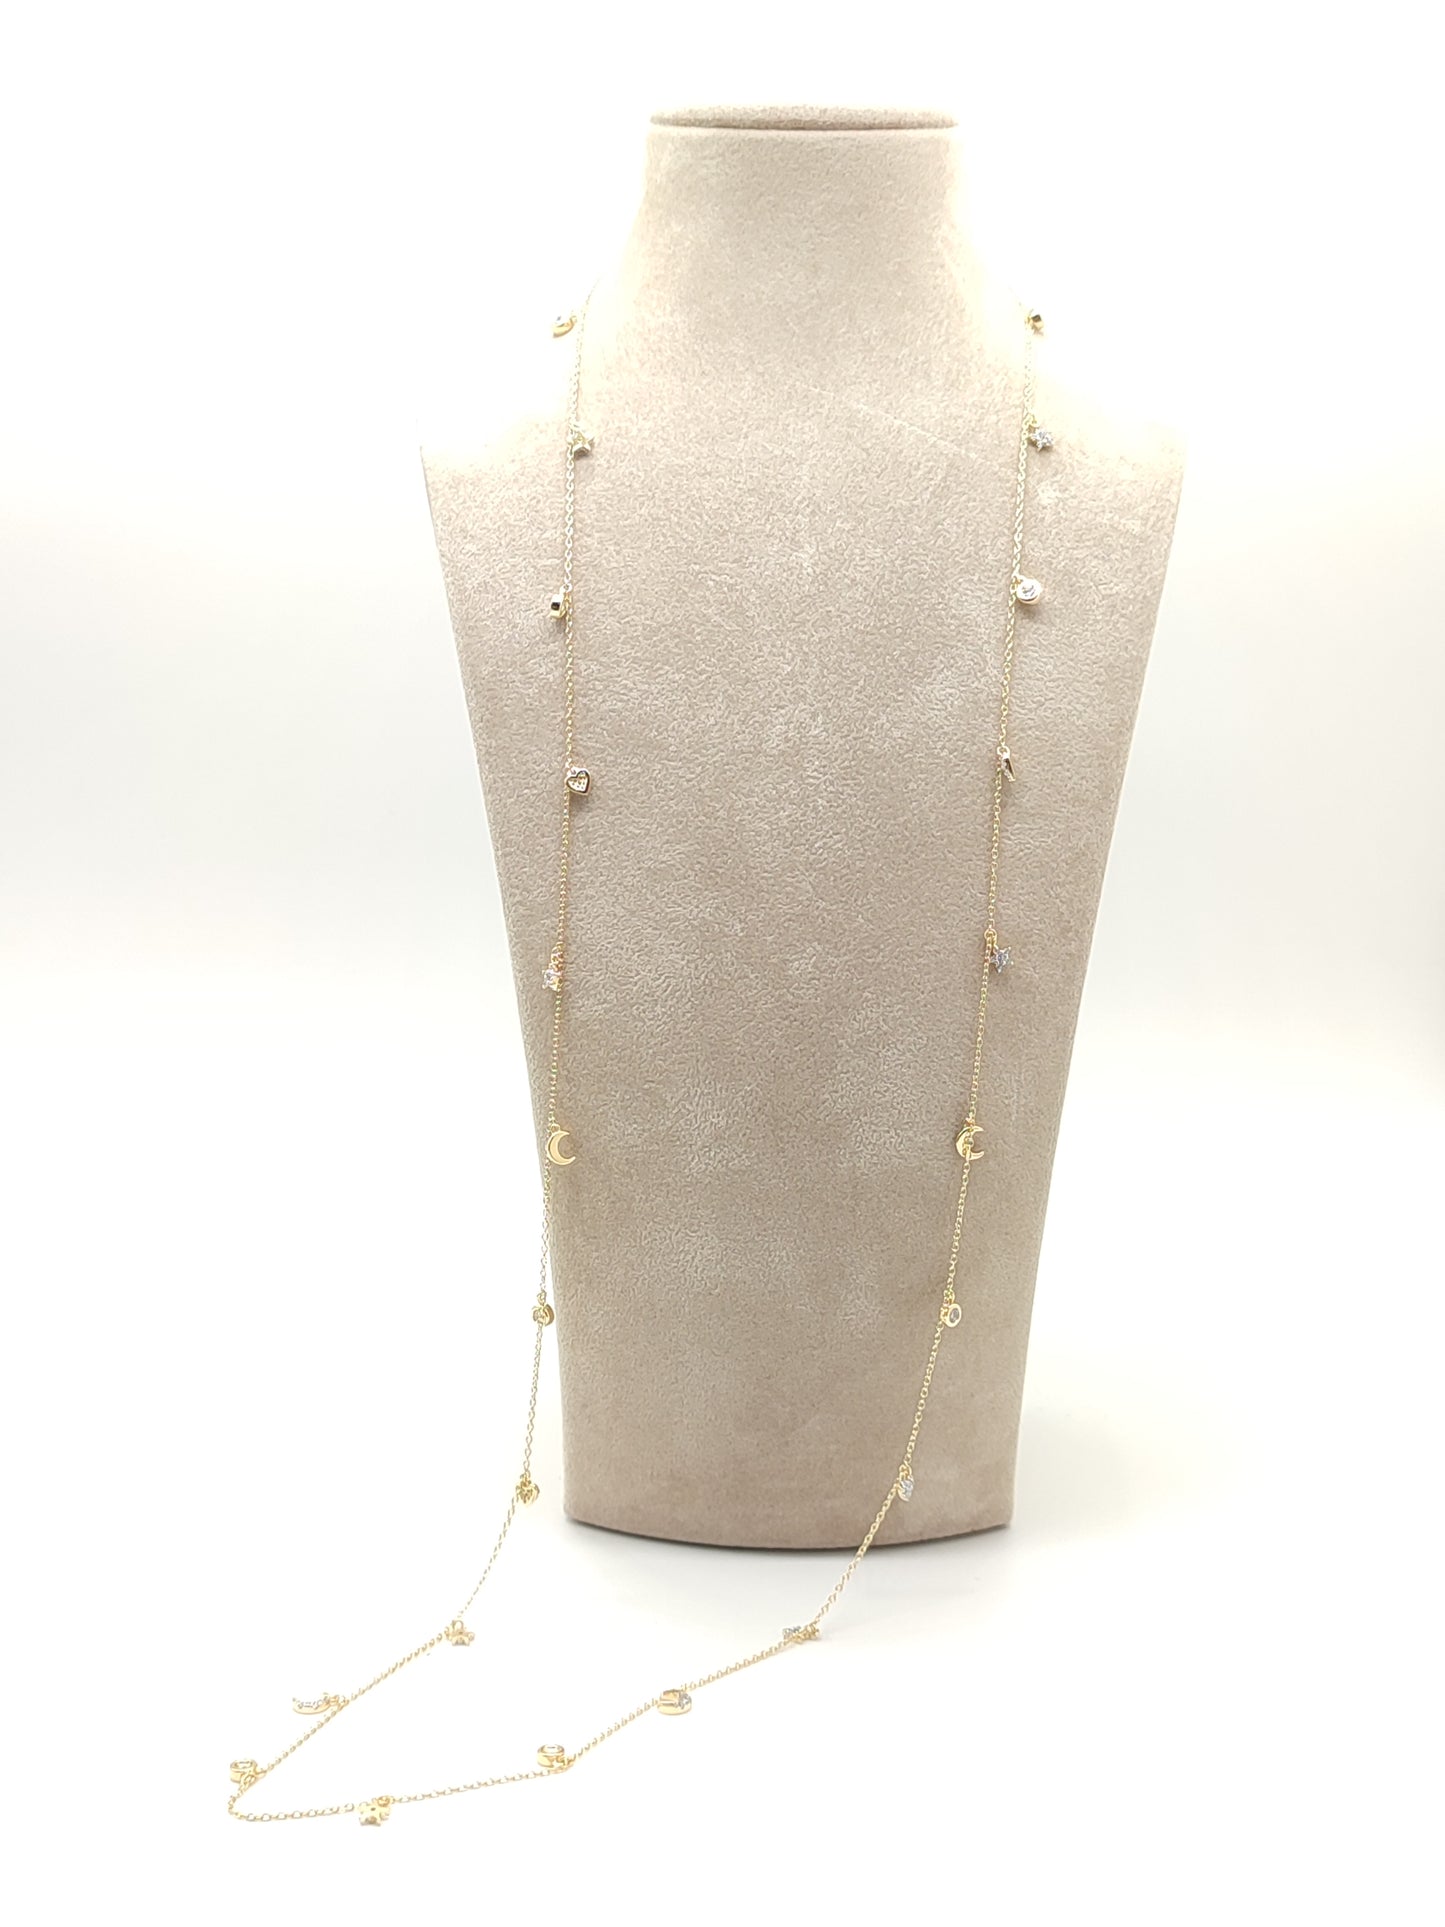 Collana lunga in argento dorato con pendenti